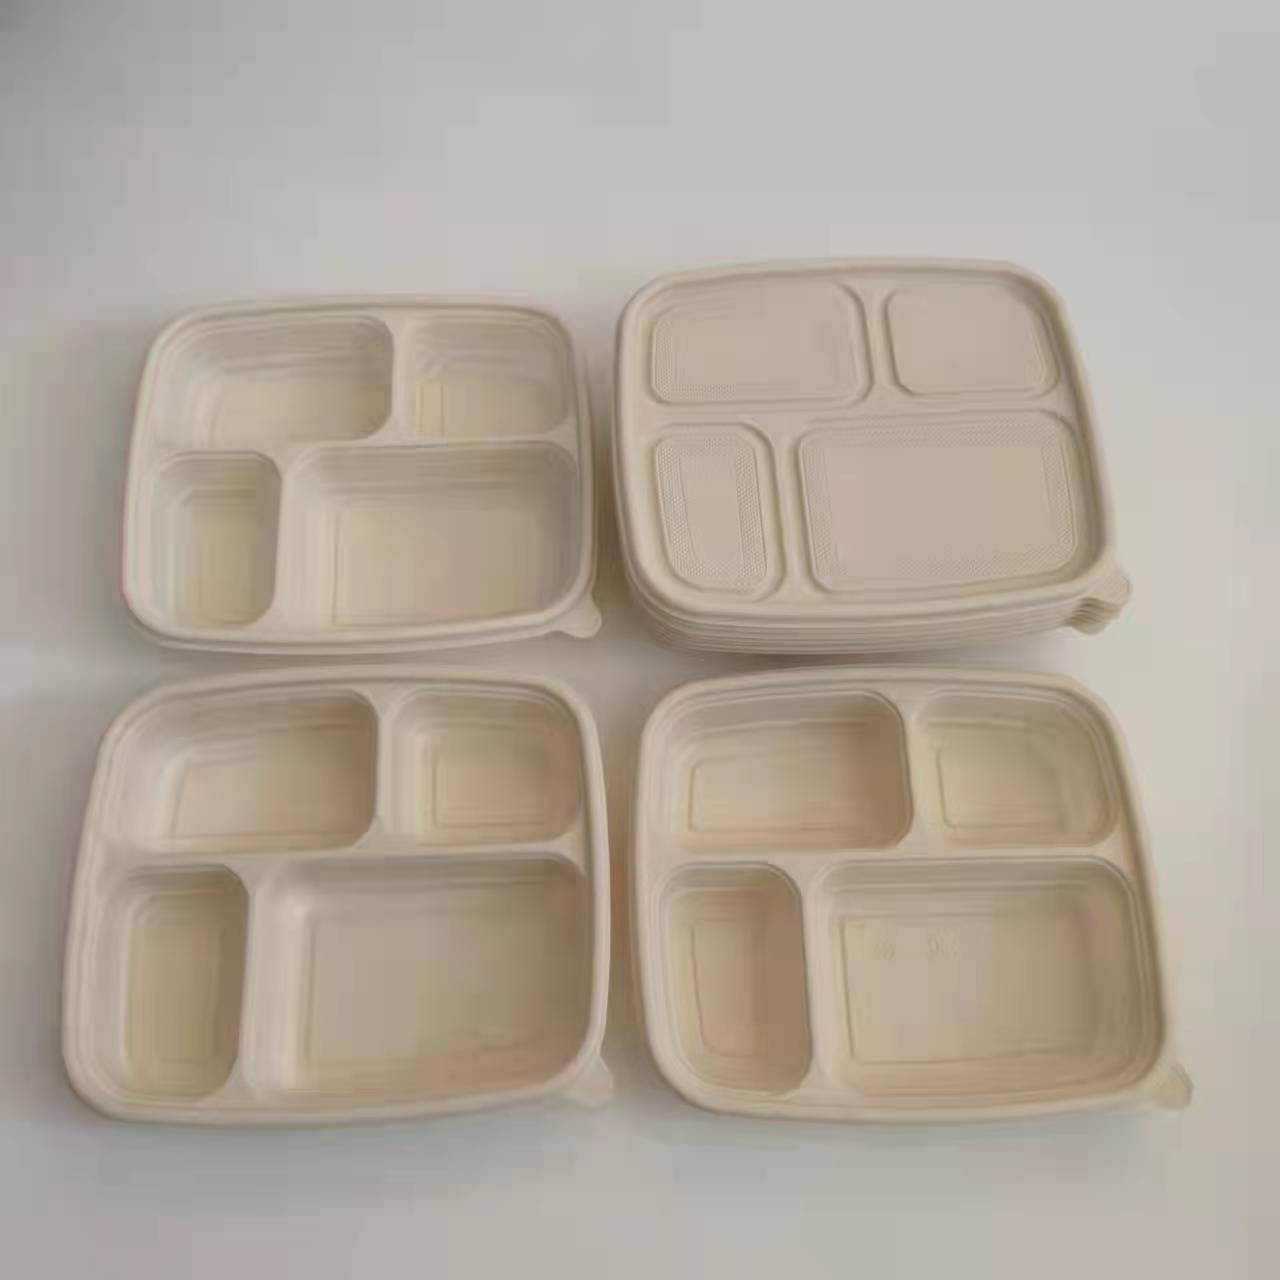 一次性餐具盒 玉米淀粉可降解便当盒 寿司沙拉打包盒长方性多格外卖盒图片